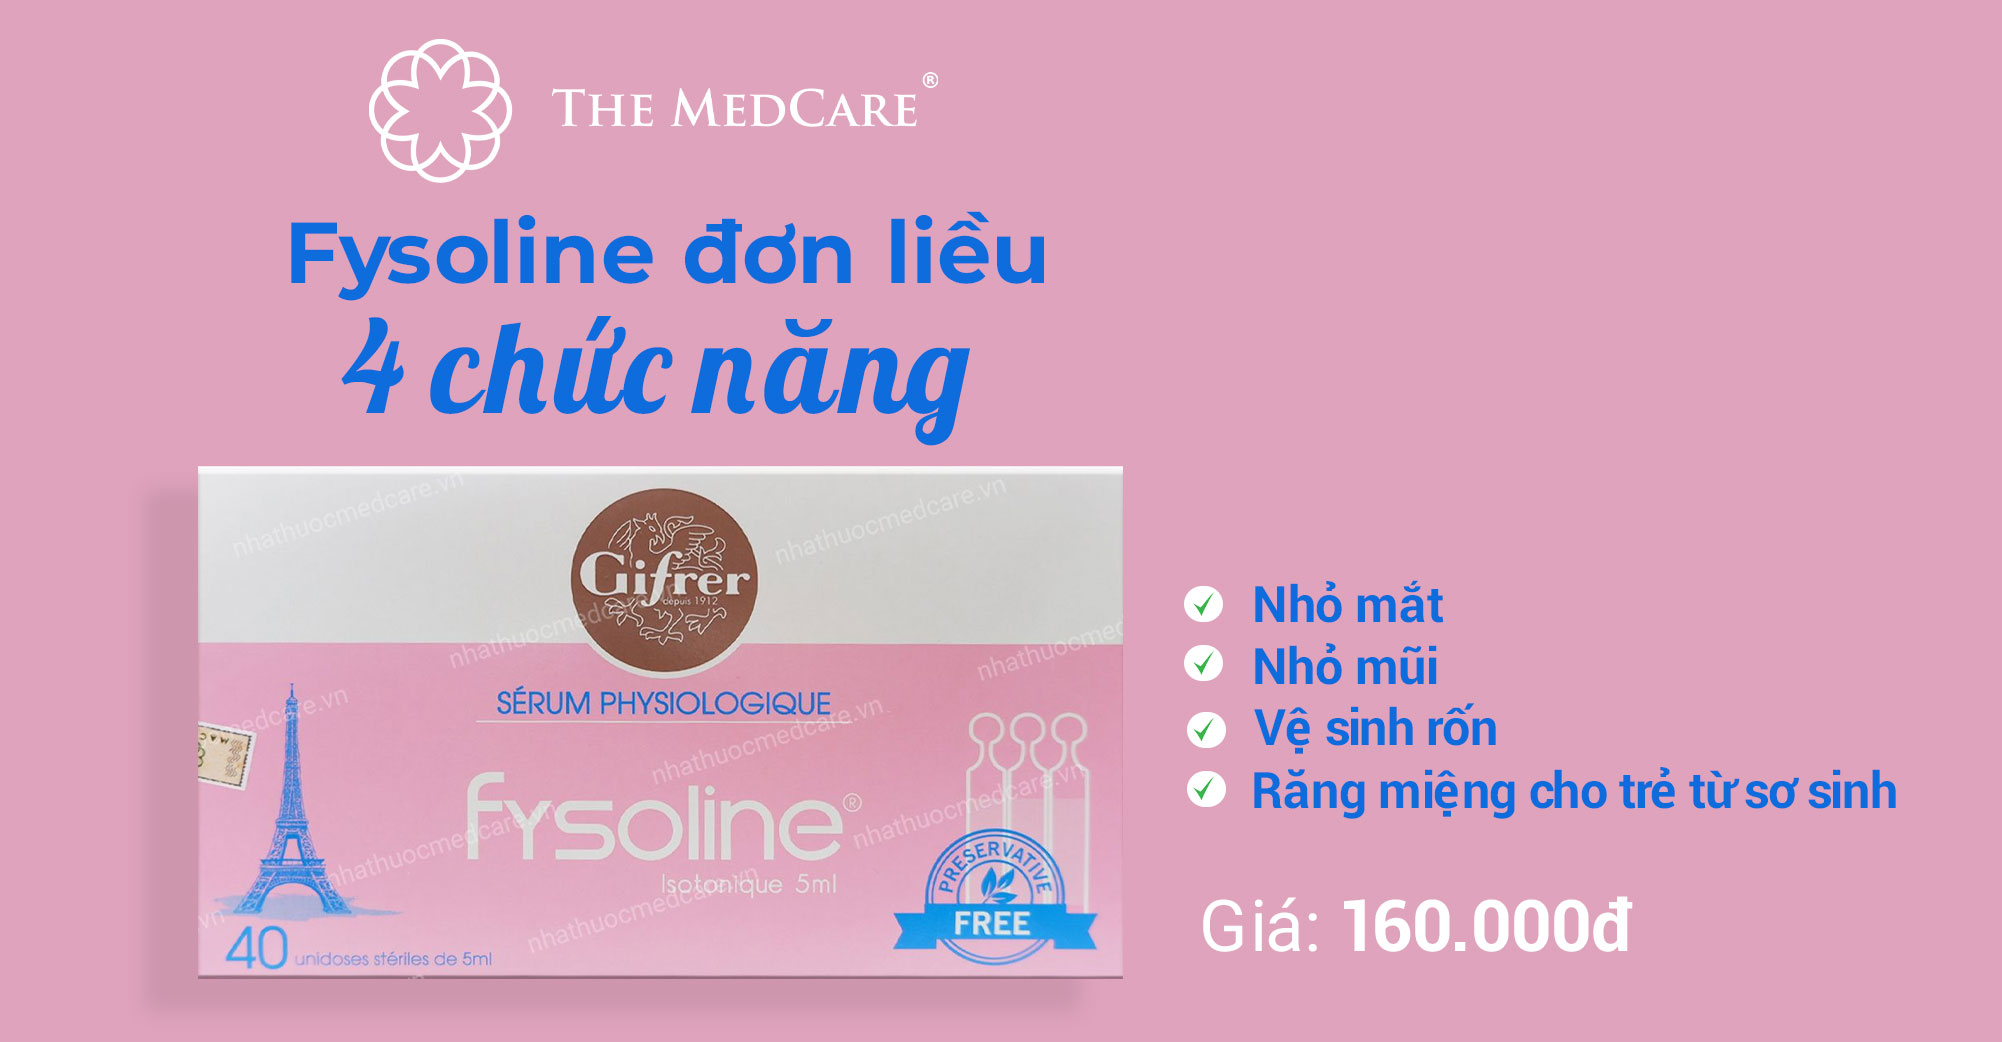 Fysoline đơn liều 4 chức năng: Cần có cho bé sơ sinh